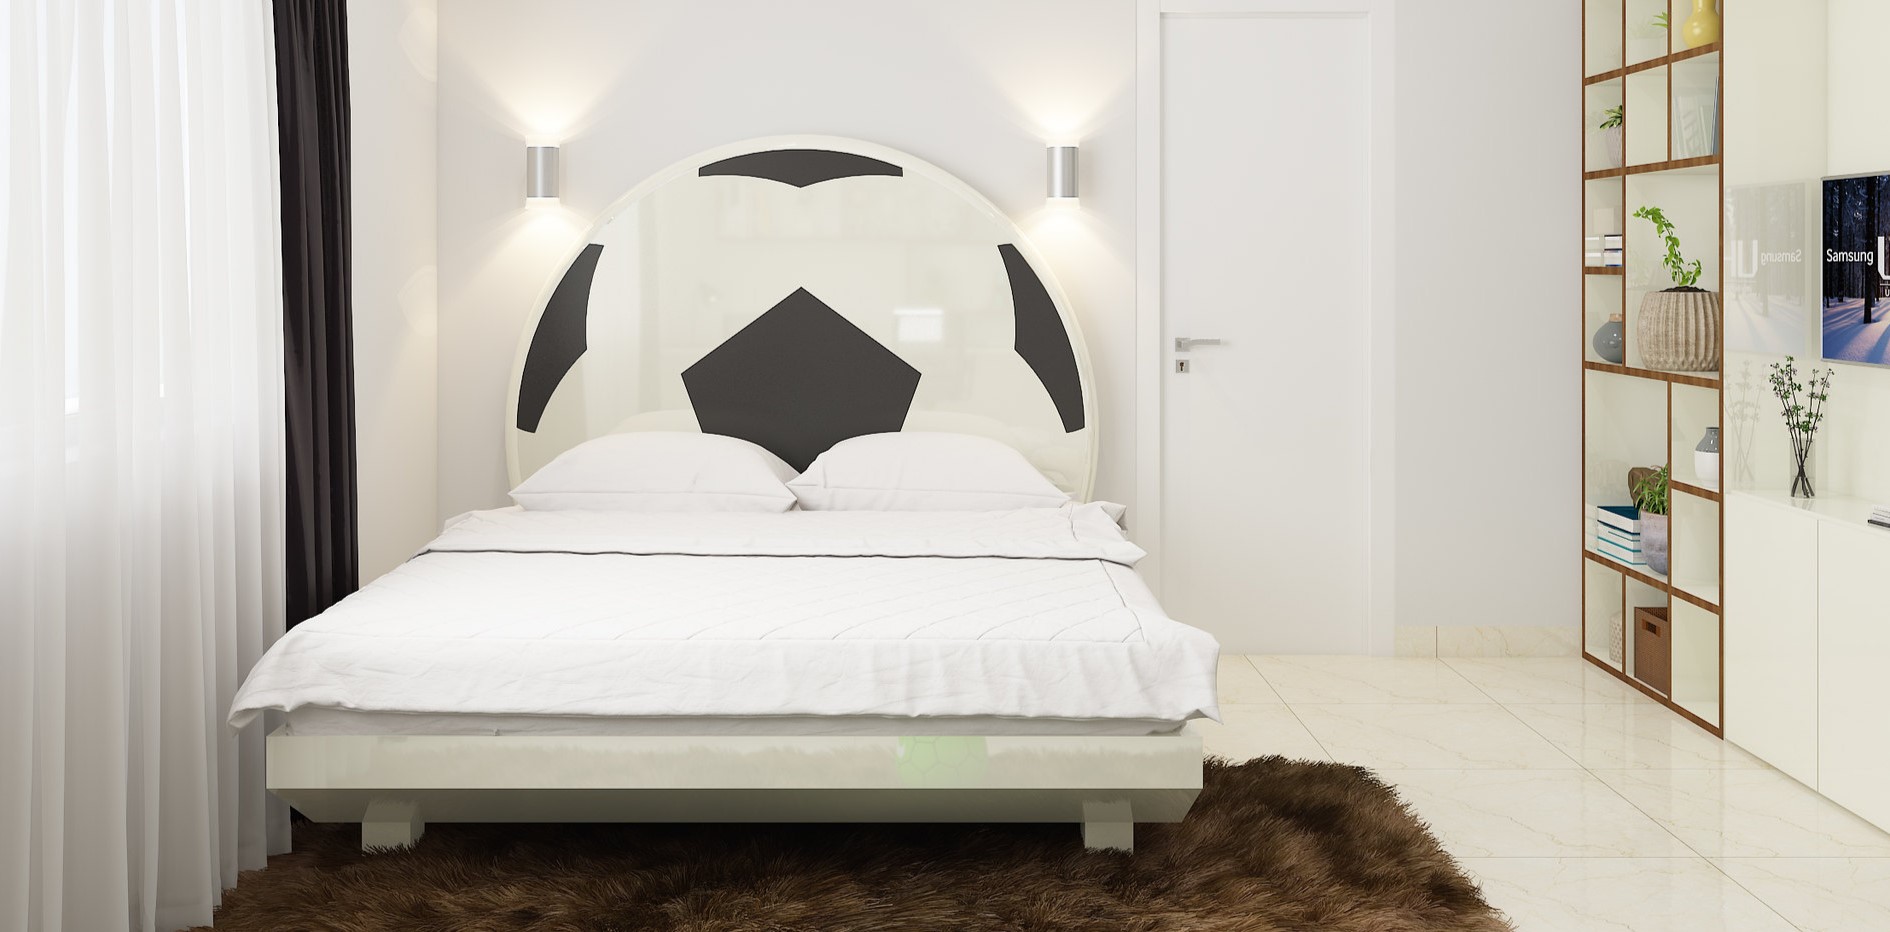 Мобильный декор в форме футбольного мяча для украшения стены